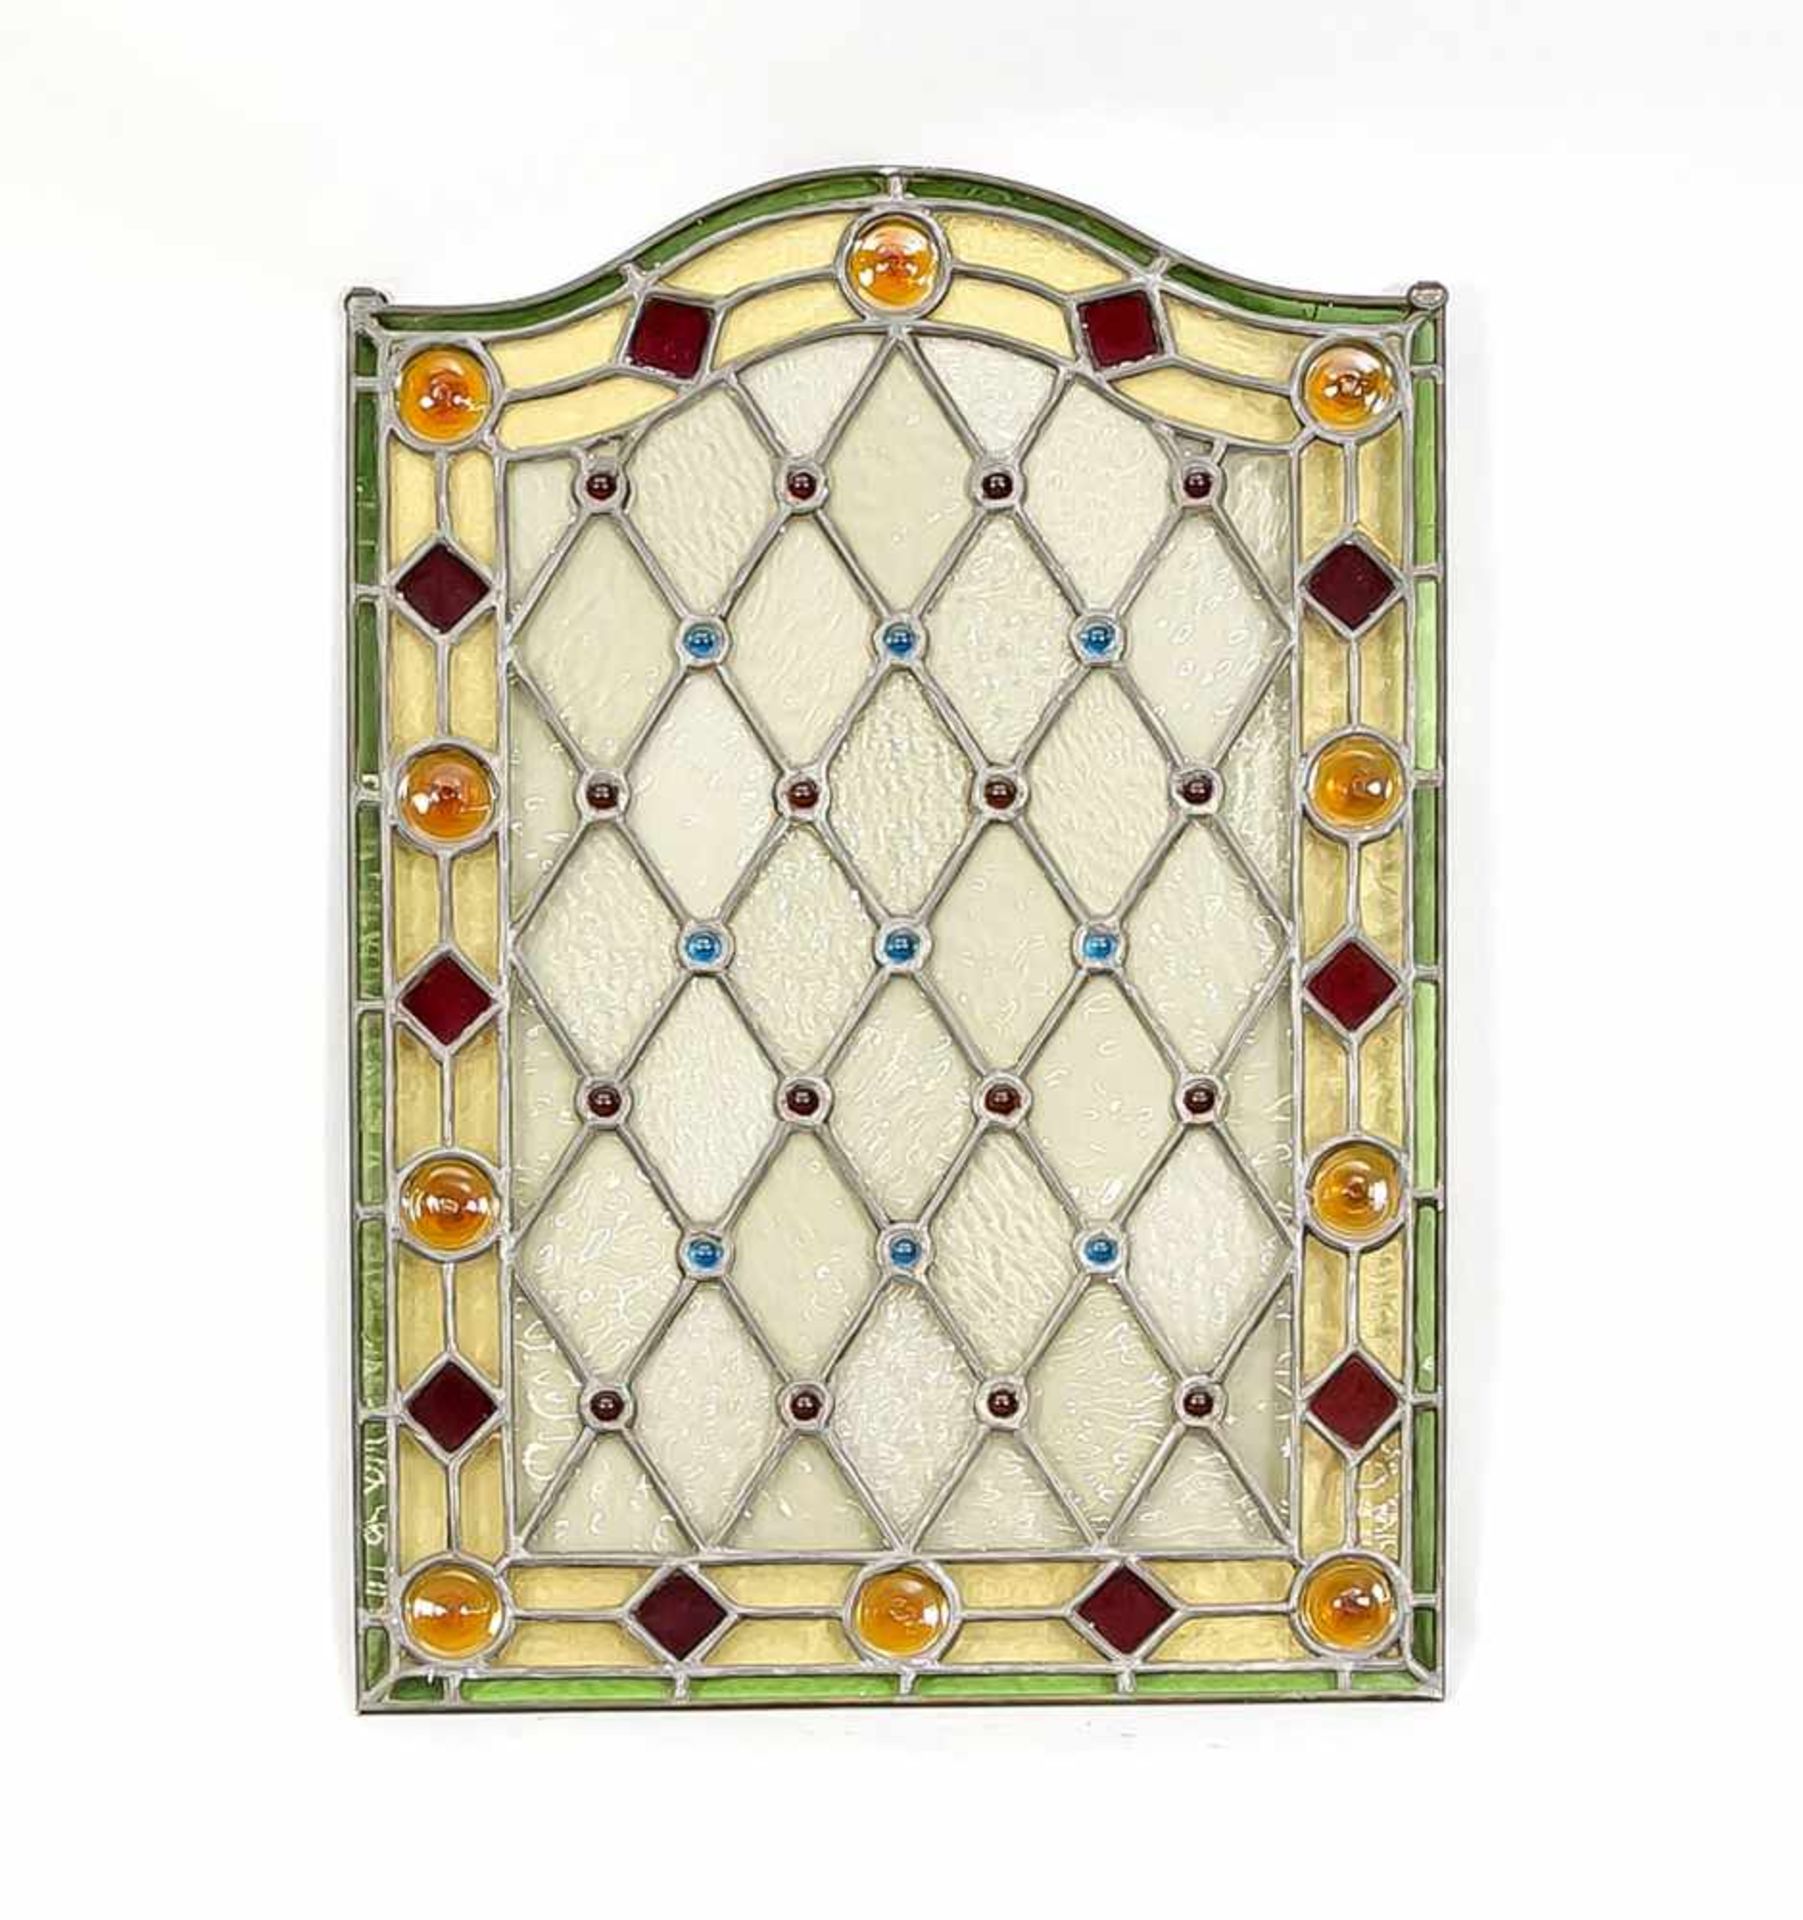 Bleiglasfenster, um 1900. Rechteckige Form mit geschwungener Oberkante. Rautenmuster mitroten und